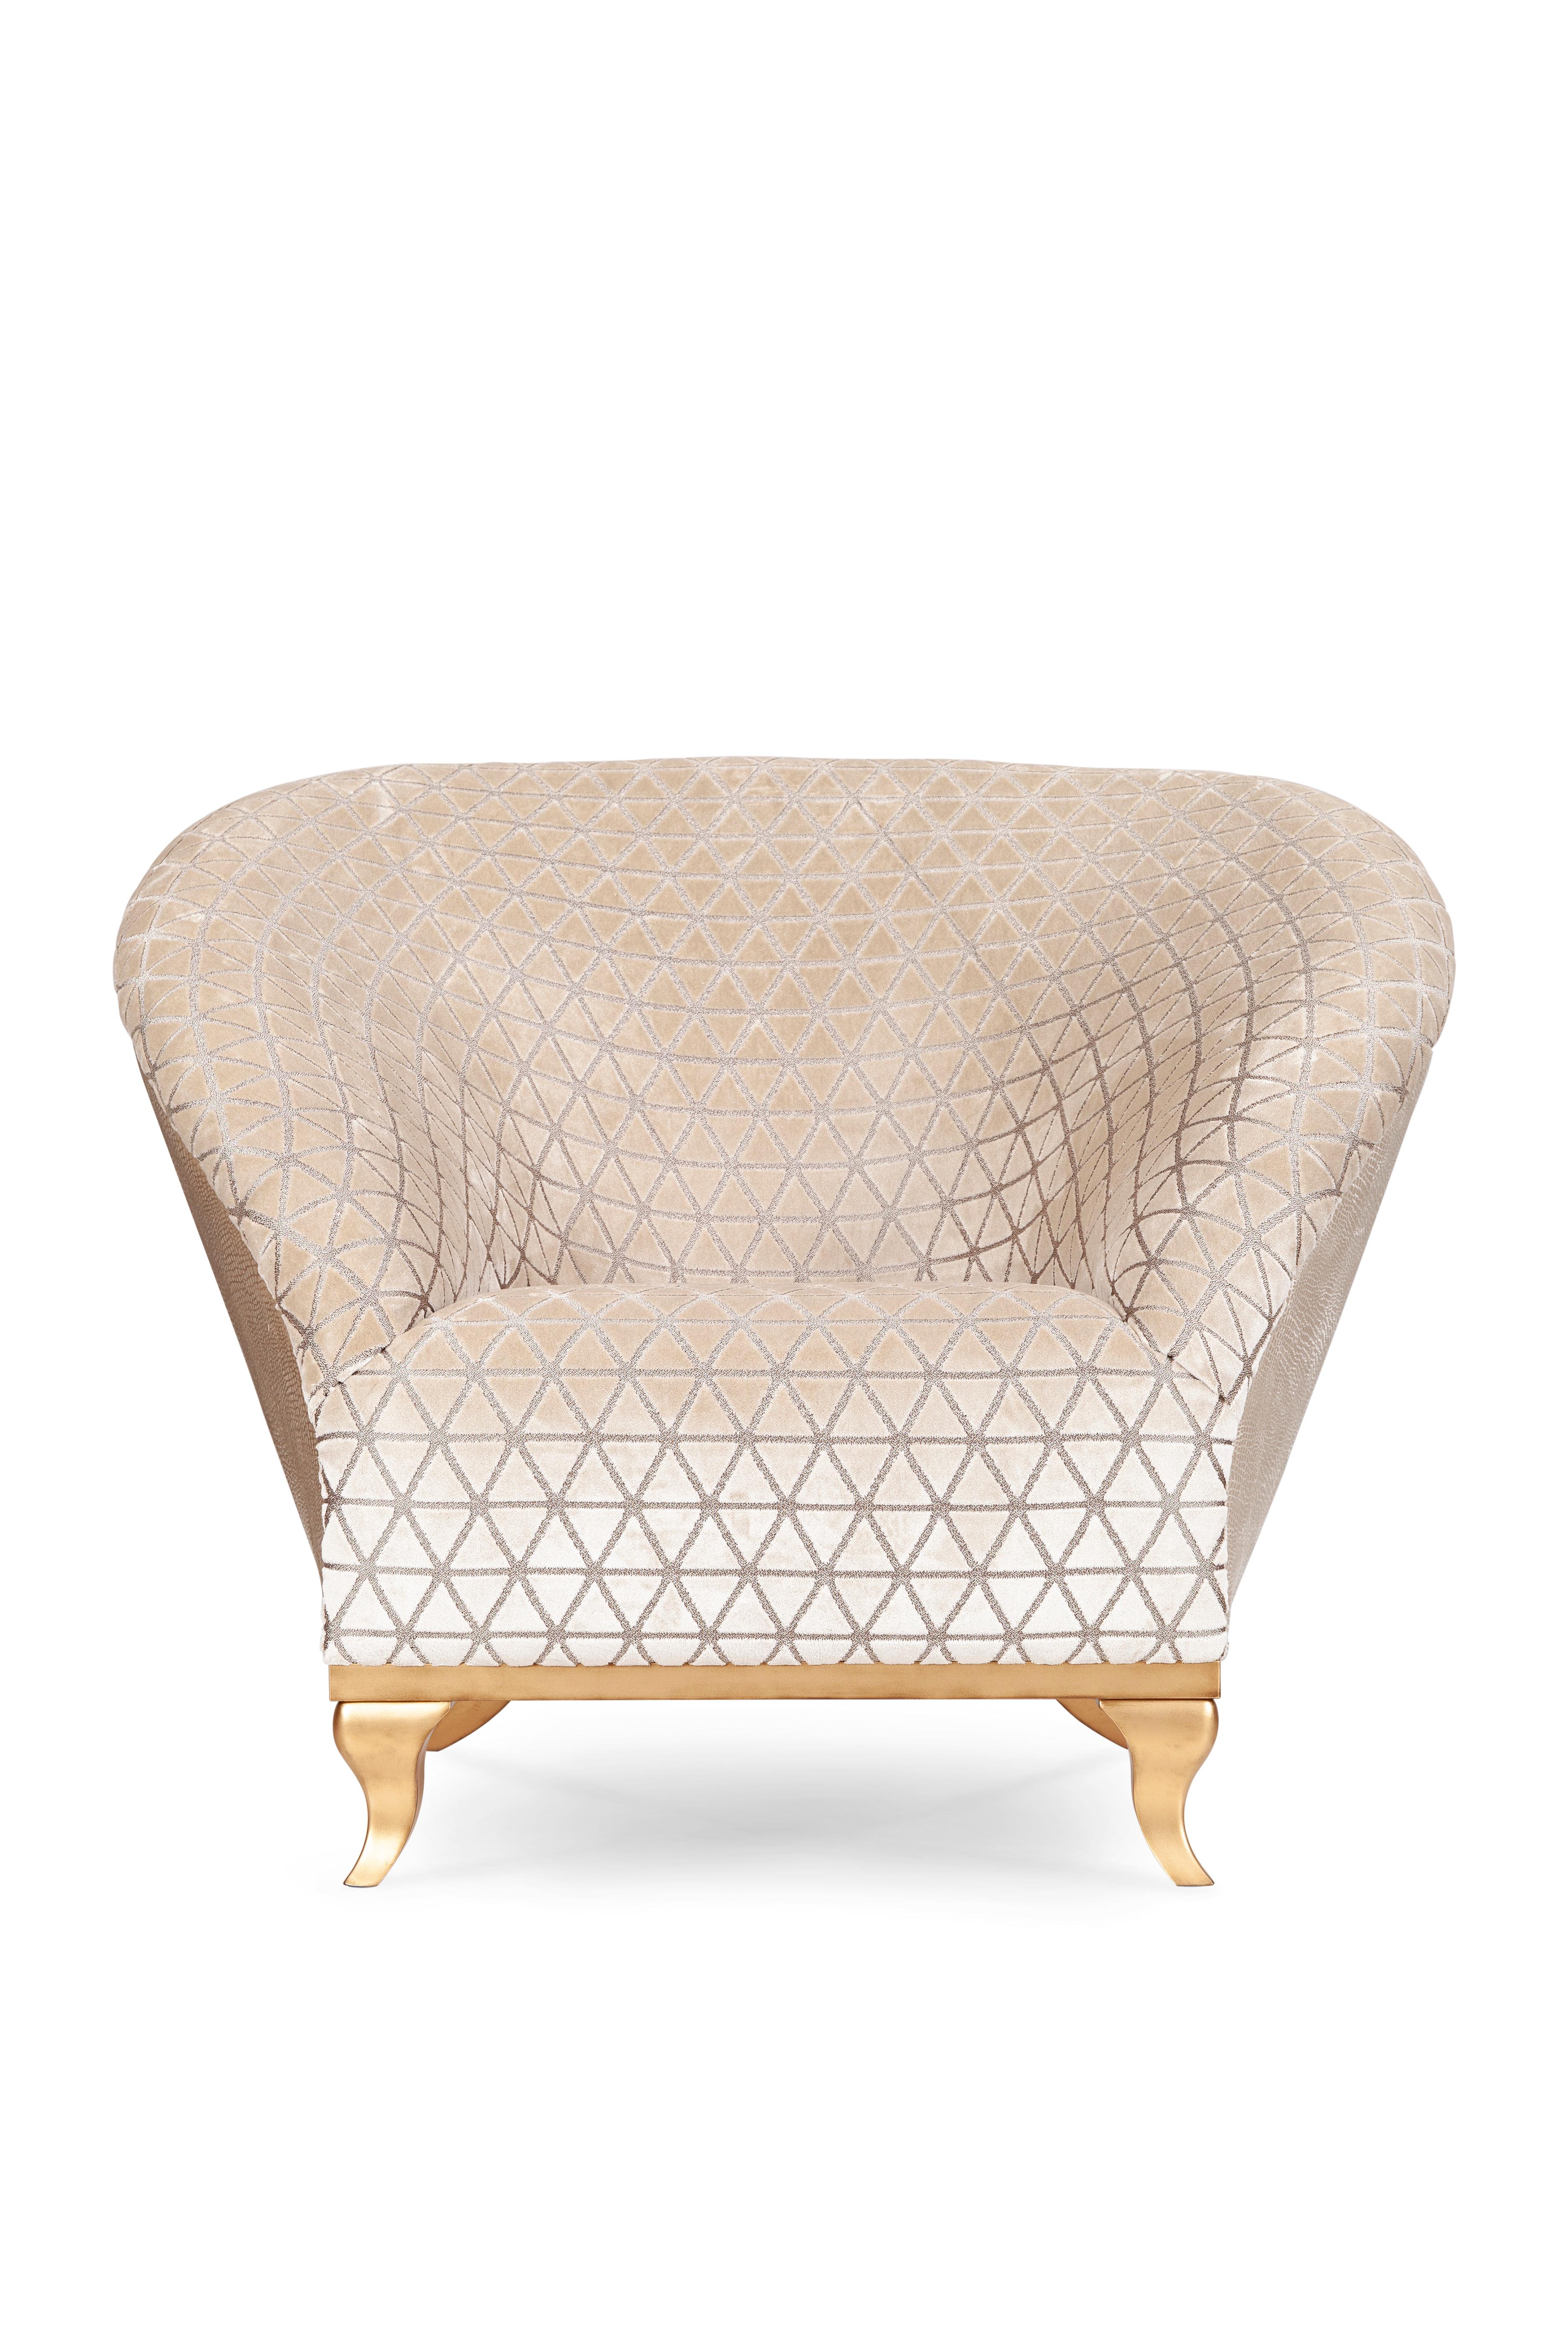 Poppi Sessel, Modern Collection'S, handgefertigt in Portugal - Europa von GF Modern.

Mit seinem eleganten Design, das von der ewigen Umgebung des Bohème-Lebens inspiriert ist, verströmt der Sessel Poppi eine stilvolle und zugleich heitere